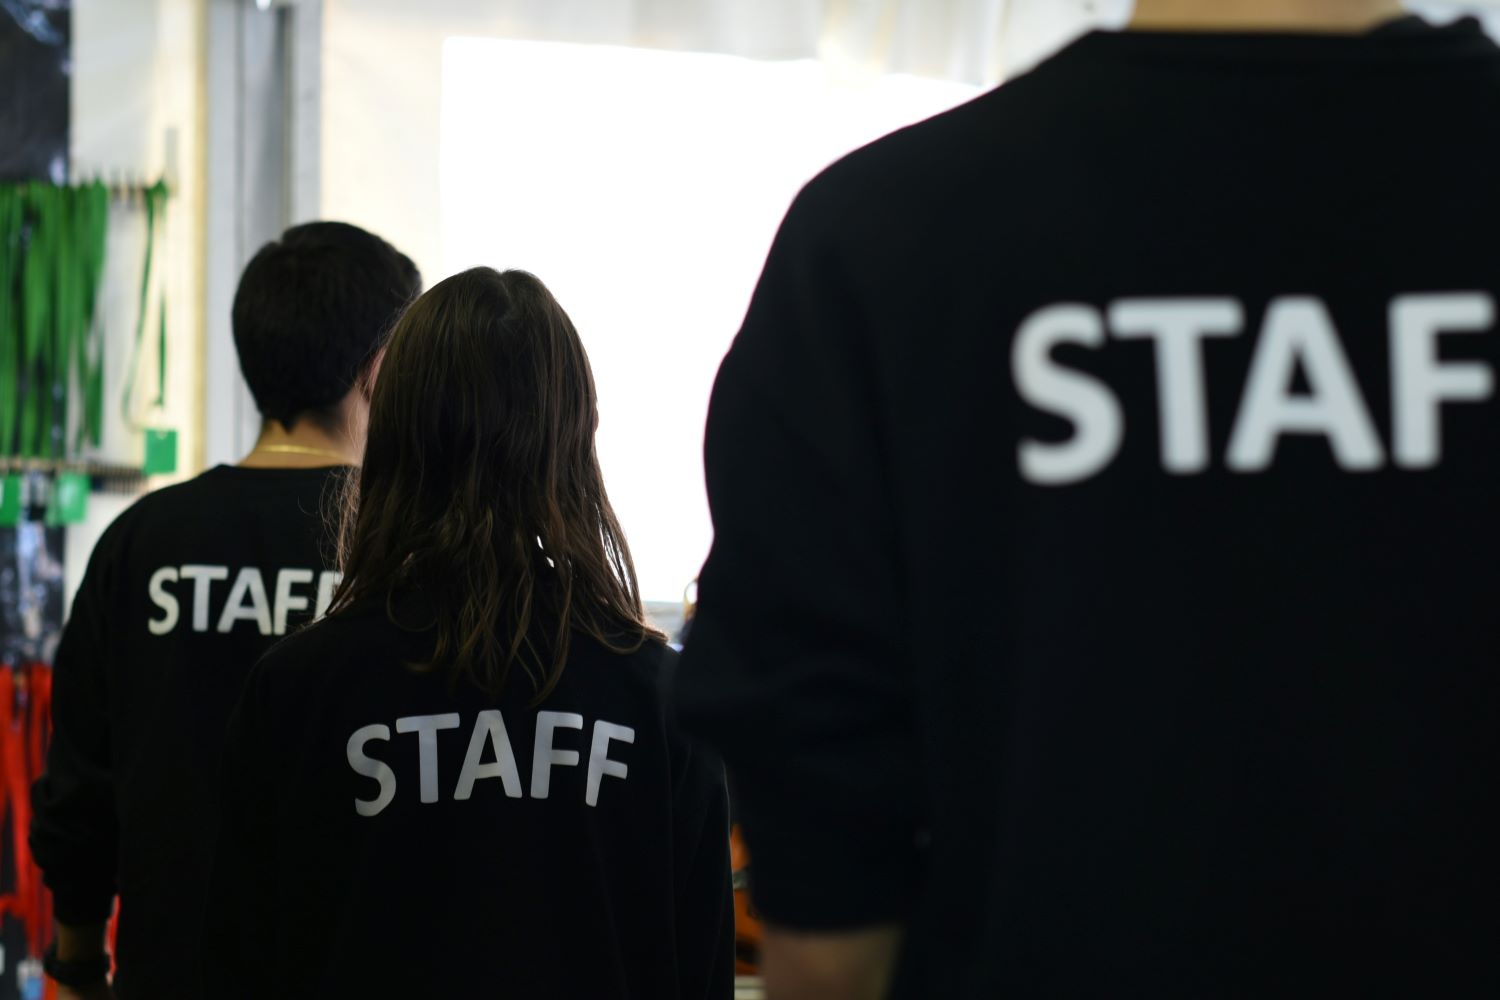 Das Bild zeigt einige Personen mit schwarzen T-Shirts von hinten. Auf den T-Shirts steht "Staff".